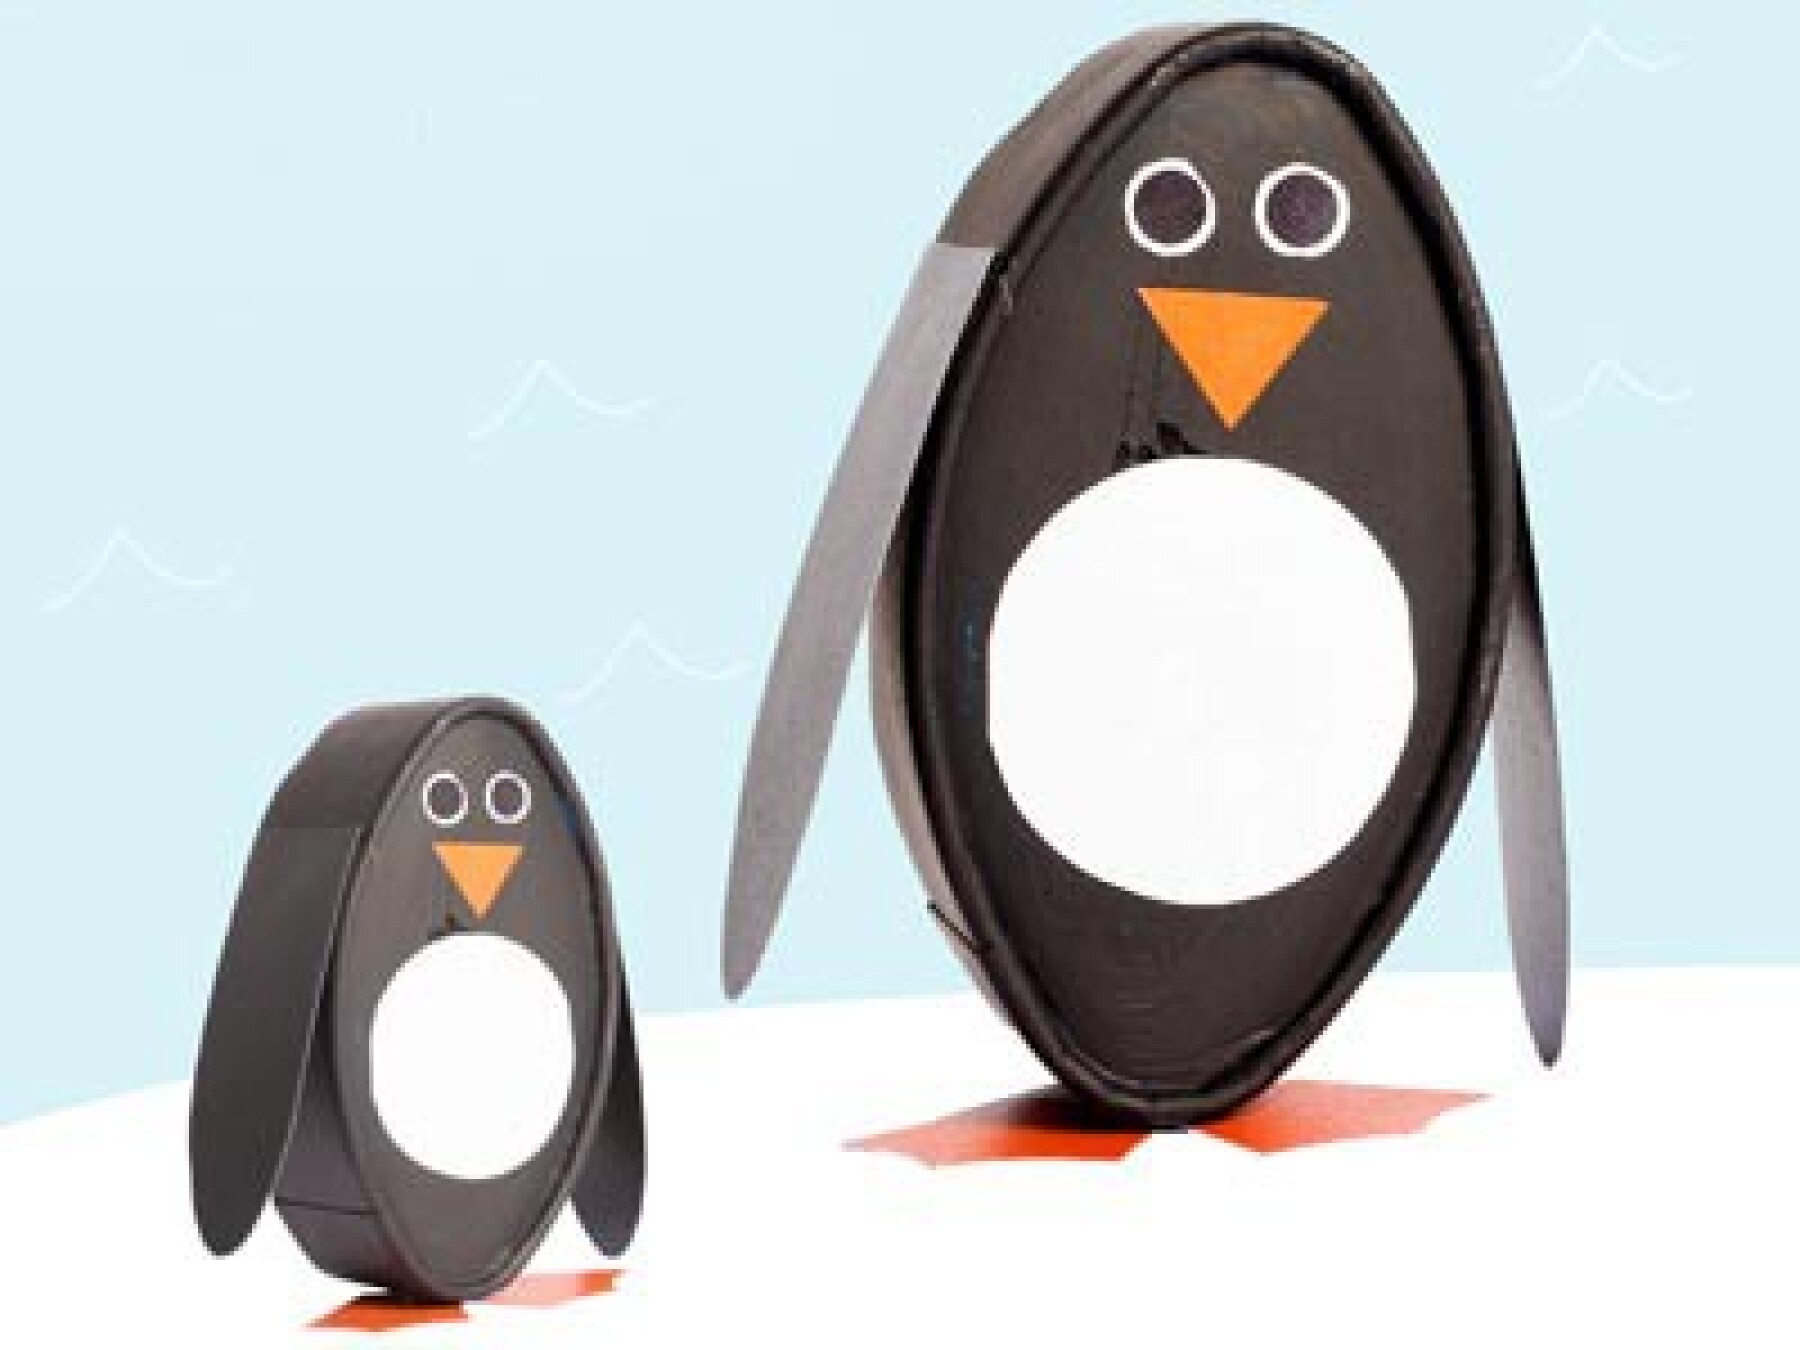 Fabrique une bande de copains pingouins !